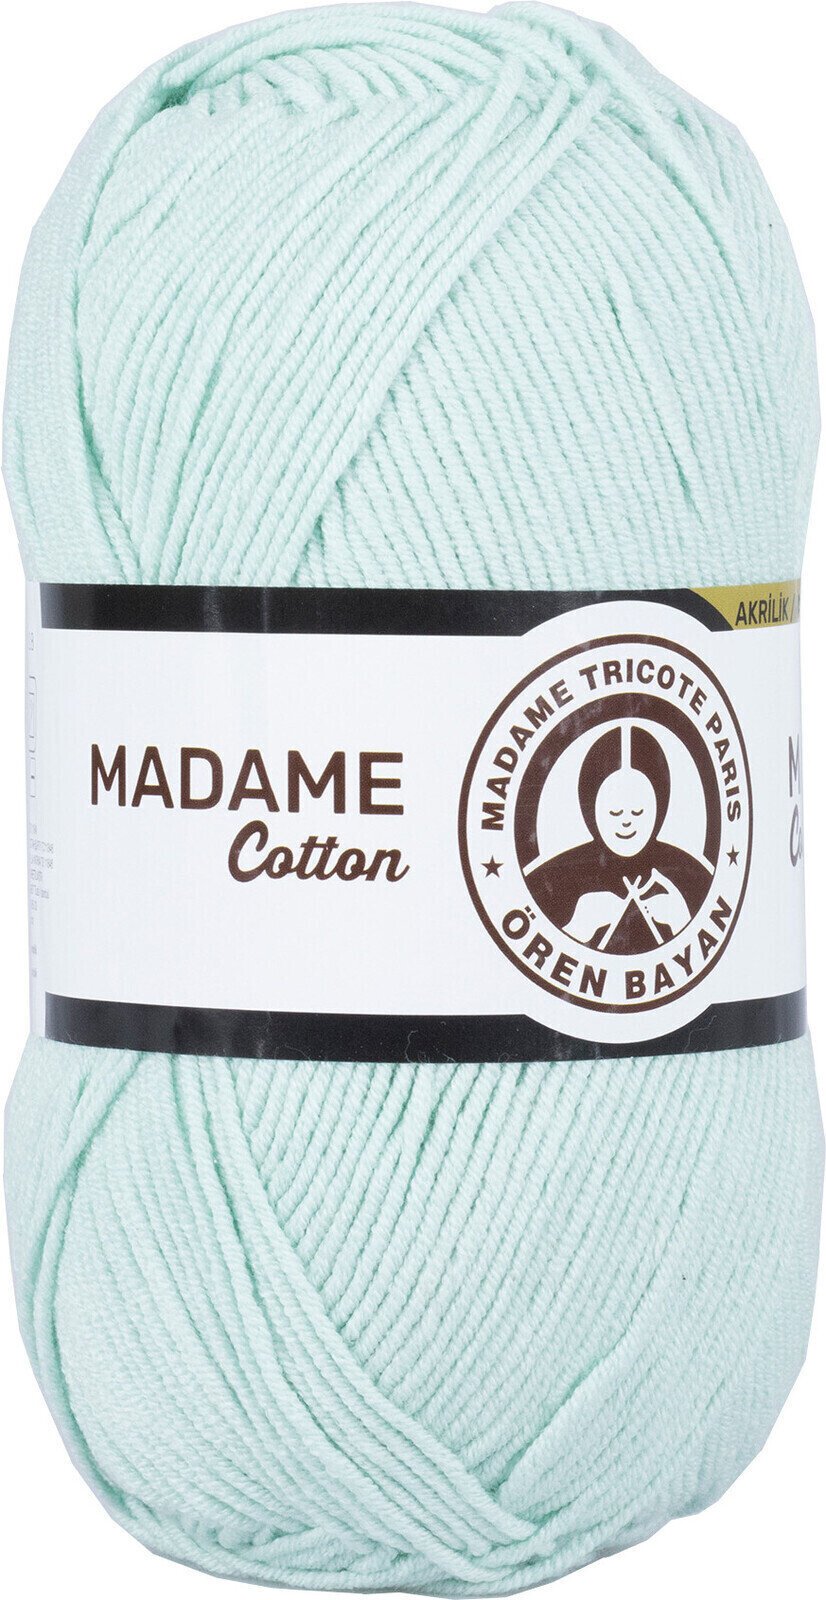 Fire de tricotat Madame Tricote Paris Madame Cotton 017 Pastel Green